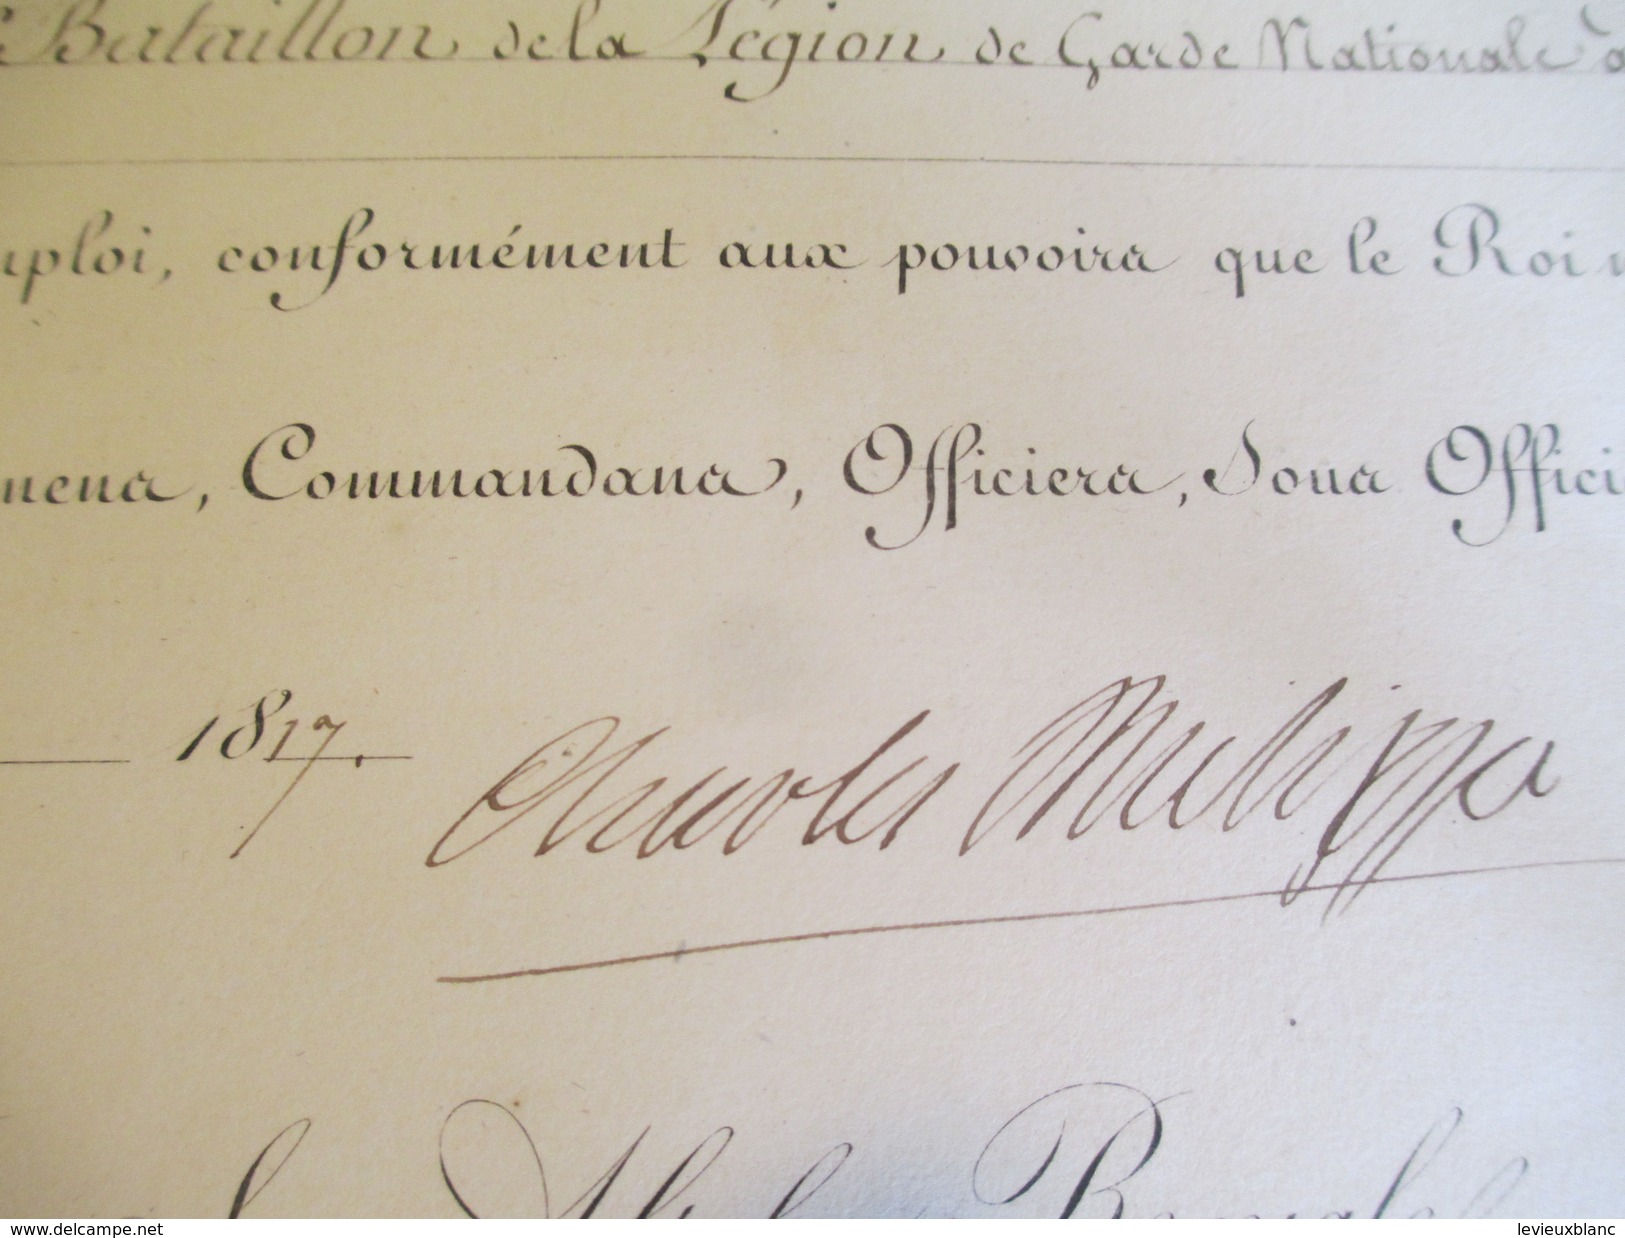 Brevet /Autographe/Charles Philippe De France,Comte D'Artois/Épernay Marne/Nomination/Hilaire/Chef Bataillon/1817 DIP208 - Diplome Und Schulzeugnisse